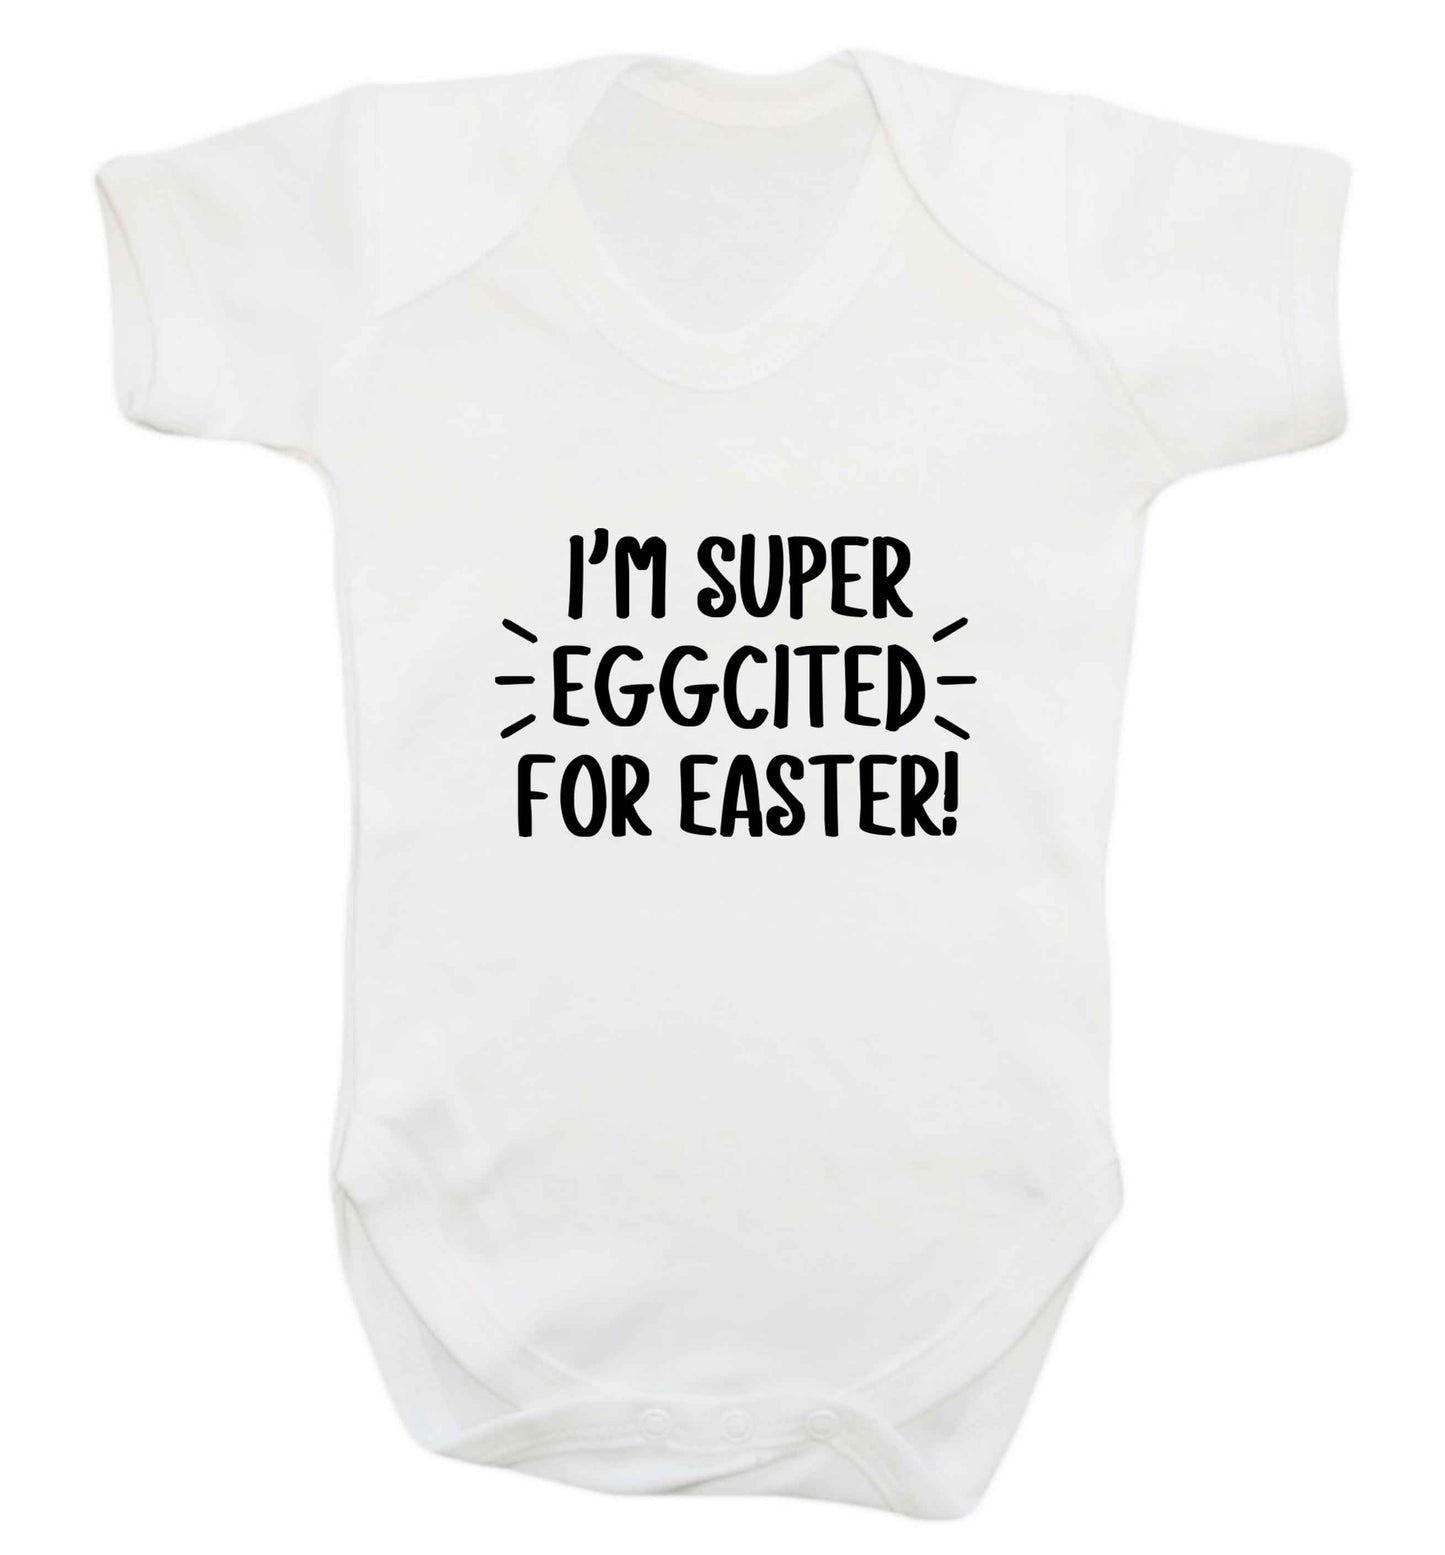 I'm super eggcited for Easter baby vest white 18-24 months